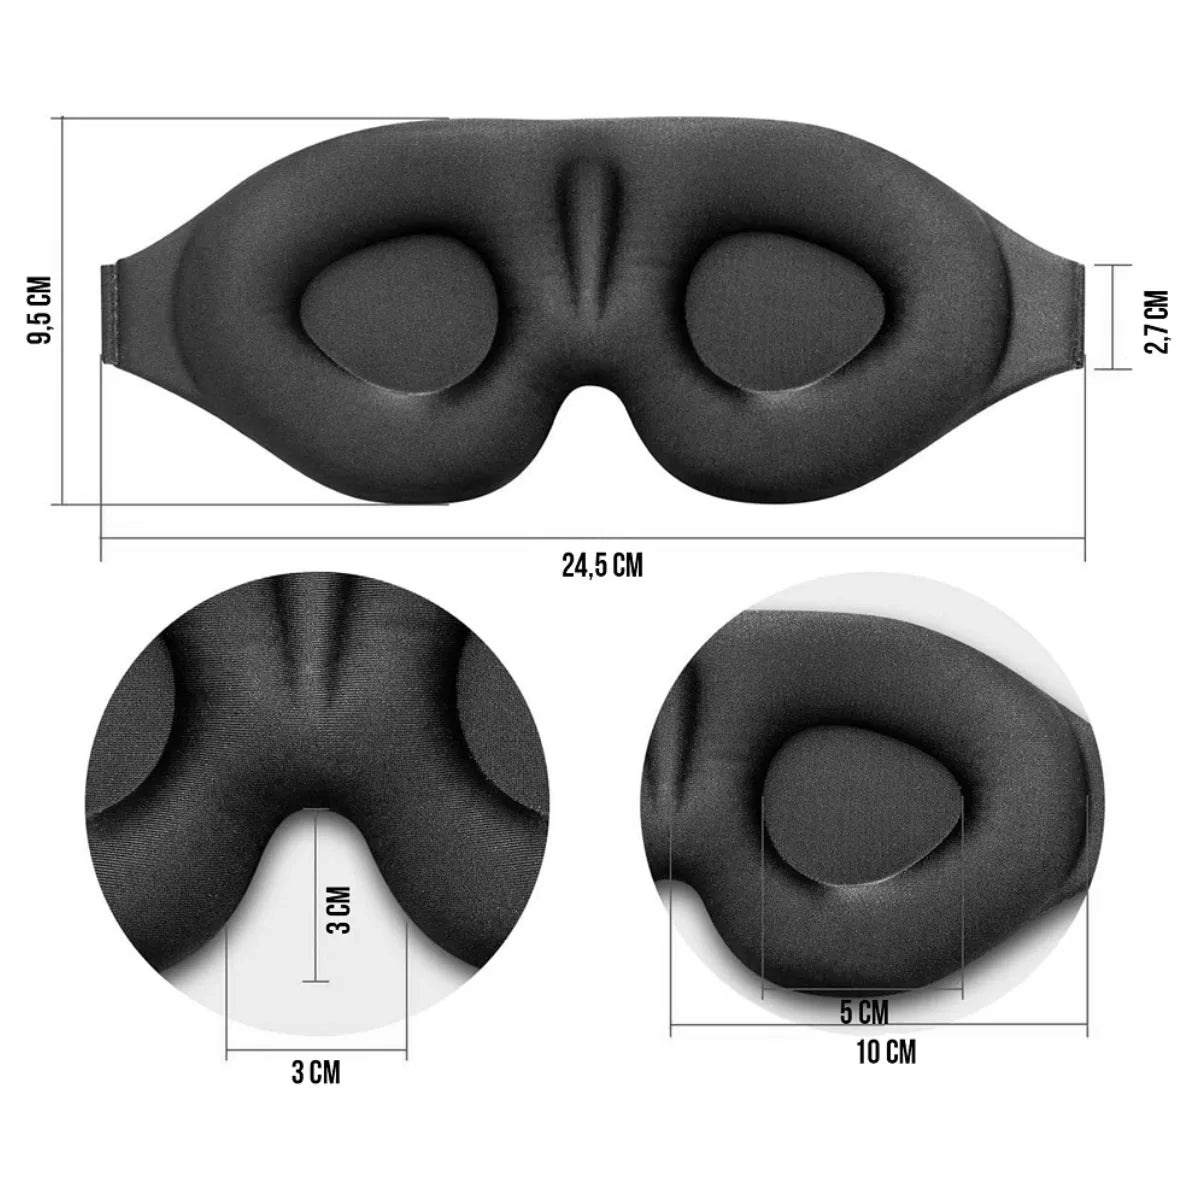 WAYA Premium 3D-unimaski musta antaa runsaasti tilaa silmien liikkua vapaasti